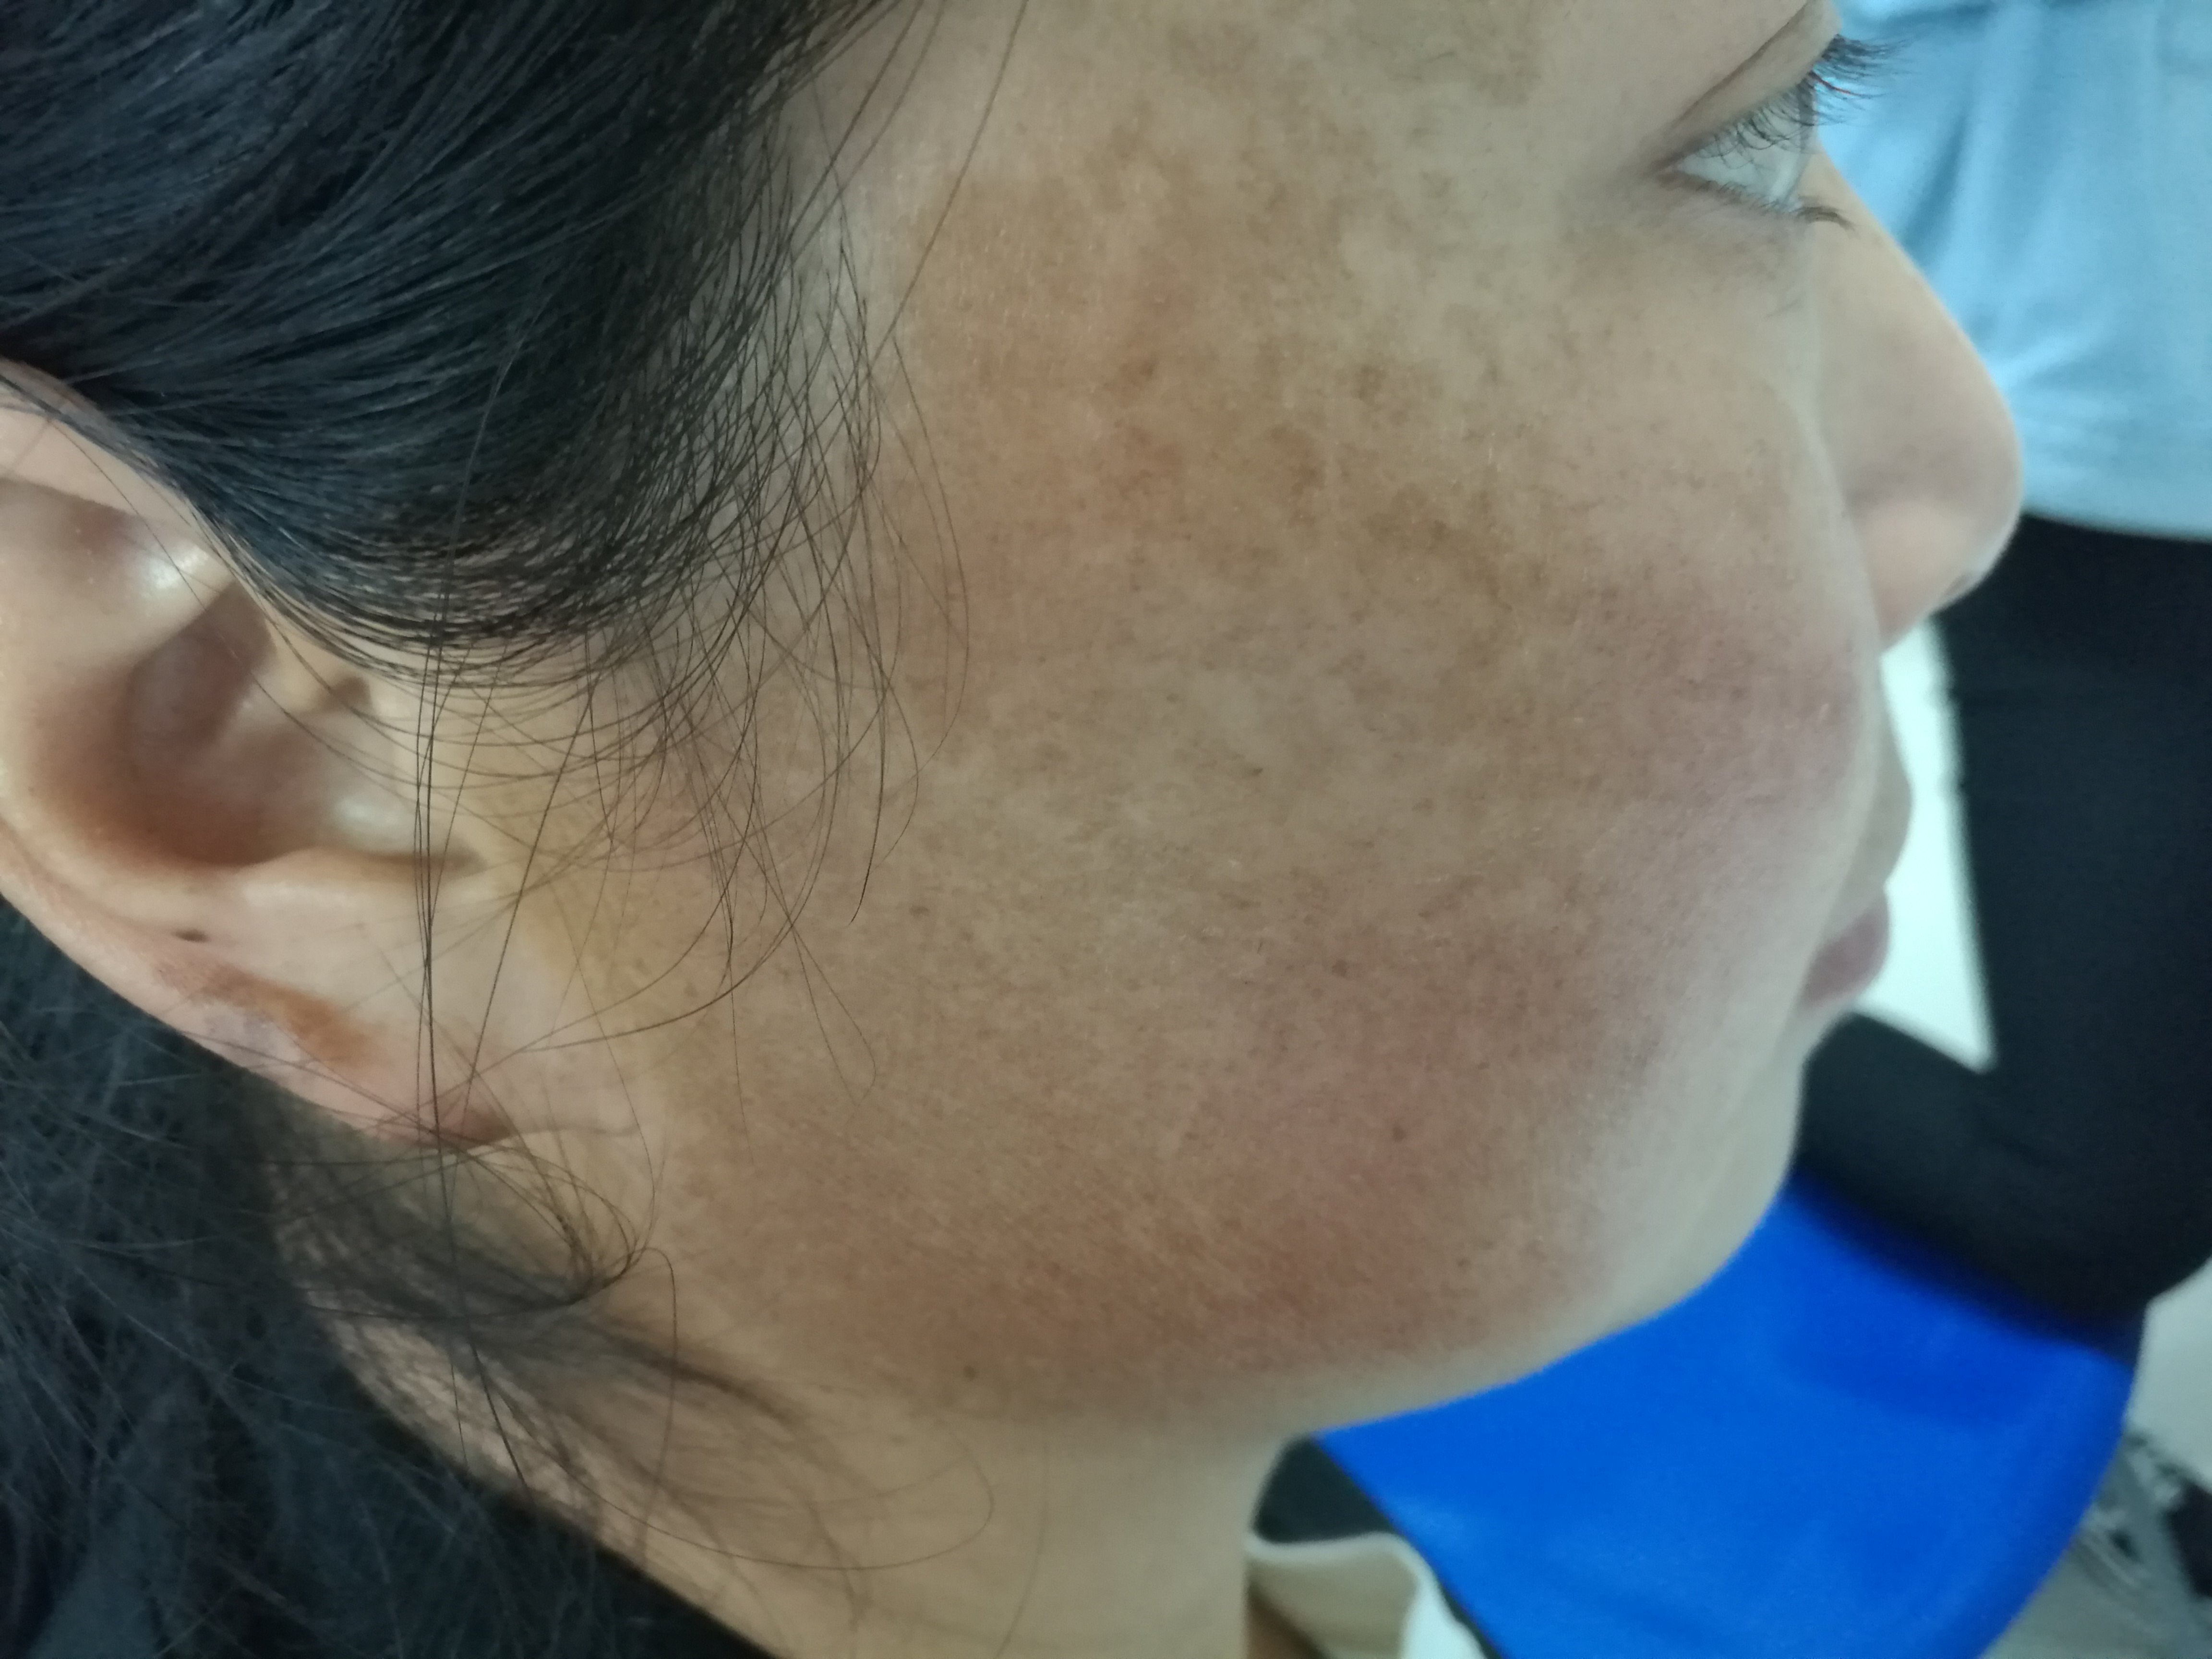 该病主要发生于中年女性,表现为面颊部对称性片状浅褐色的色素沉着斑